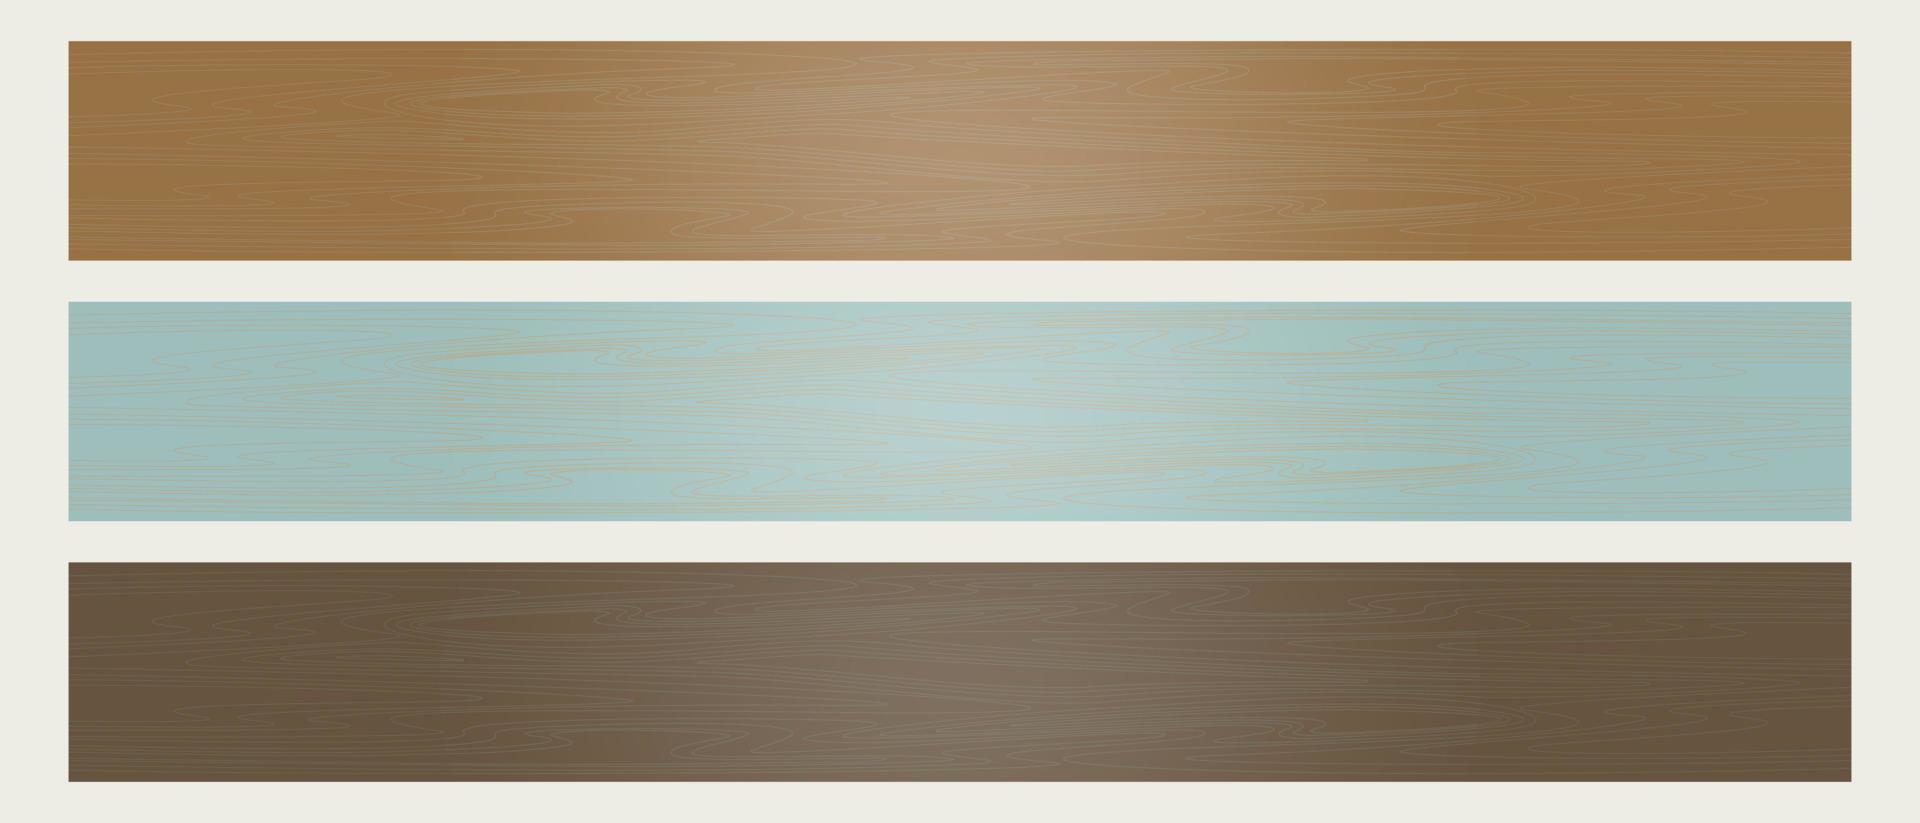 houten planken set, blauw cyaan tonen, horizontaal plank, blanco houten plank voor uithangbord decoratie. vector